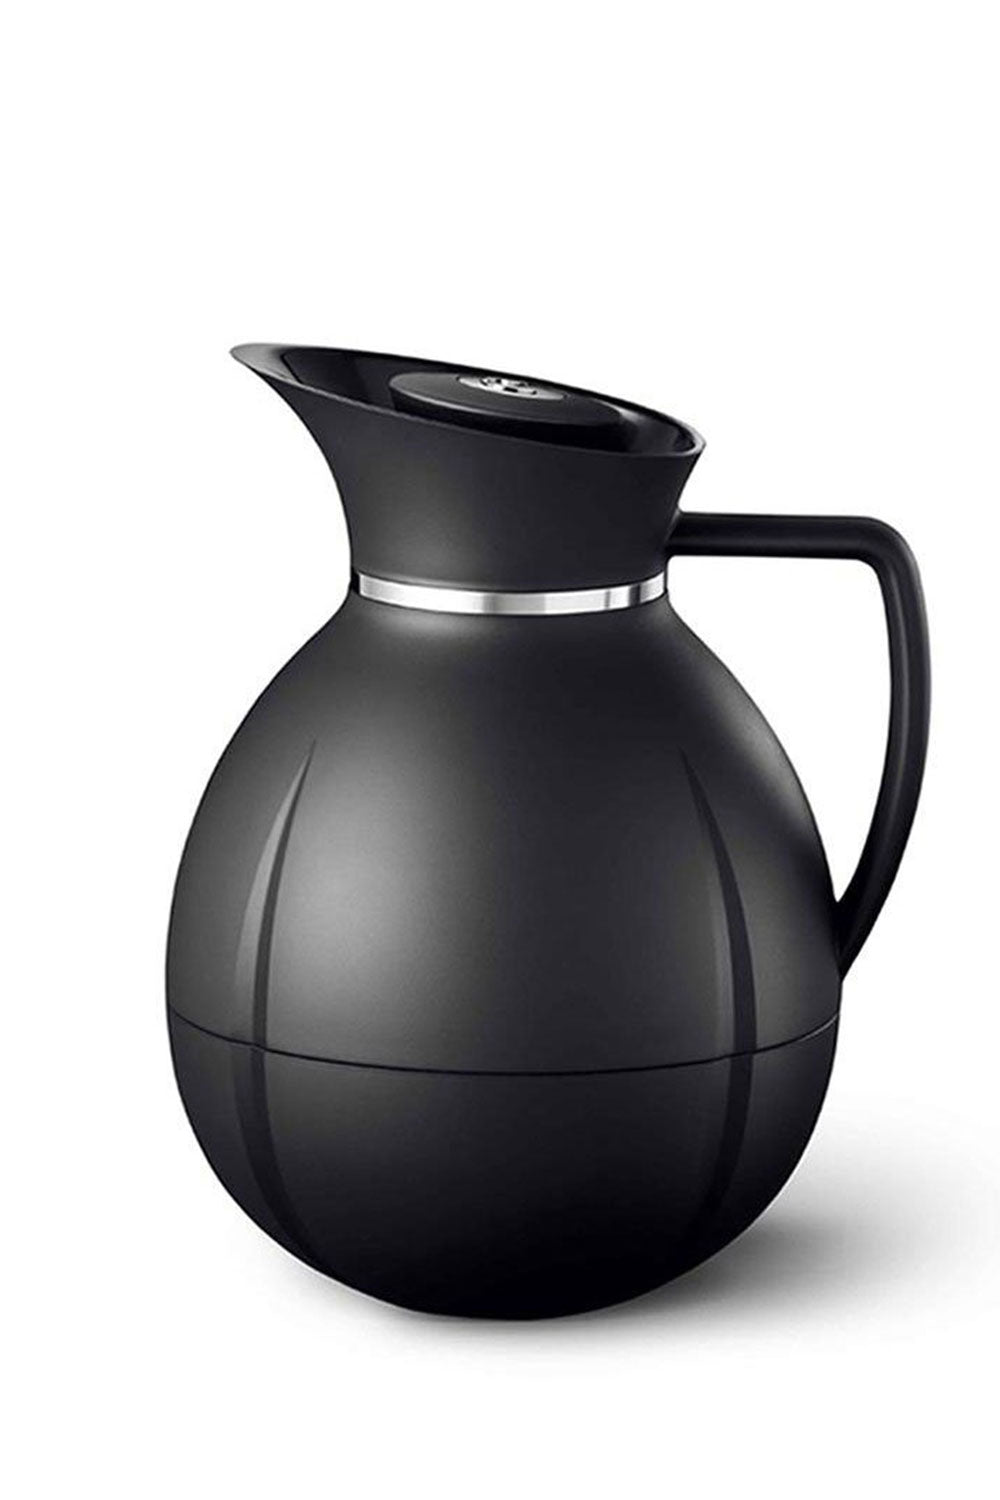 Grand Cru Luna Round Vacuum Flask, Black, 1L